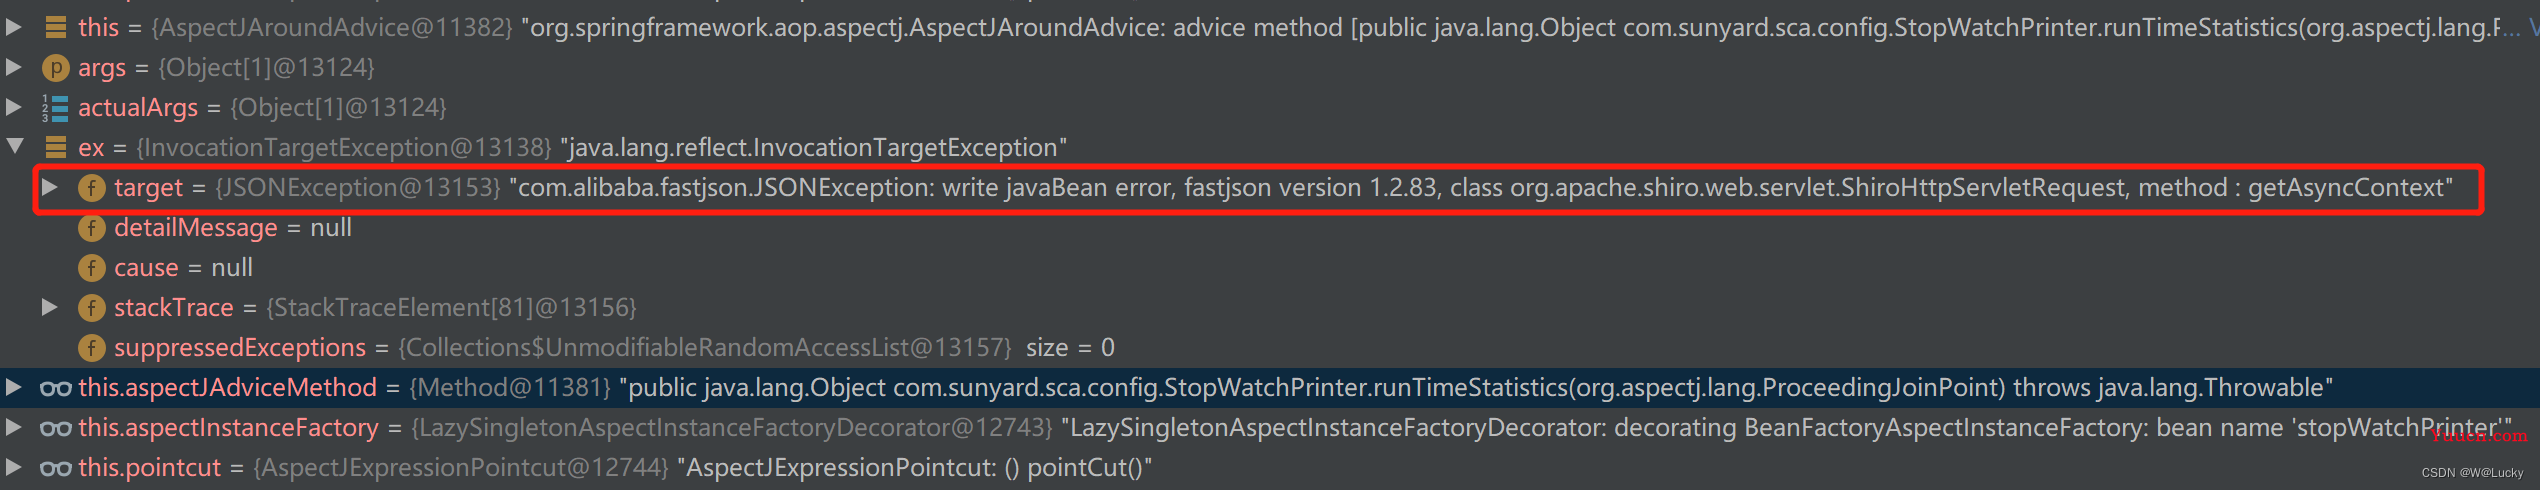 “write javaBean error, fastjson version 1.2.83, class org.apache.shiro.web.servlet.ShiroHttpServletR